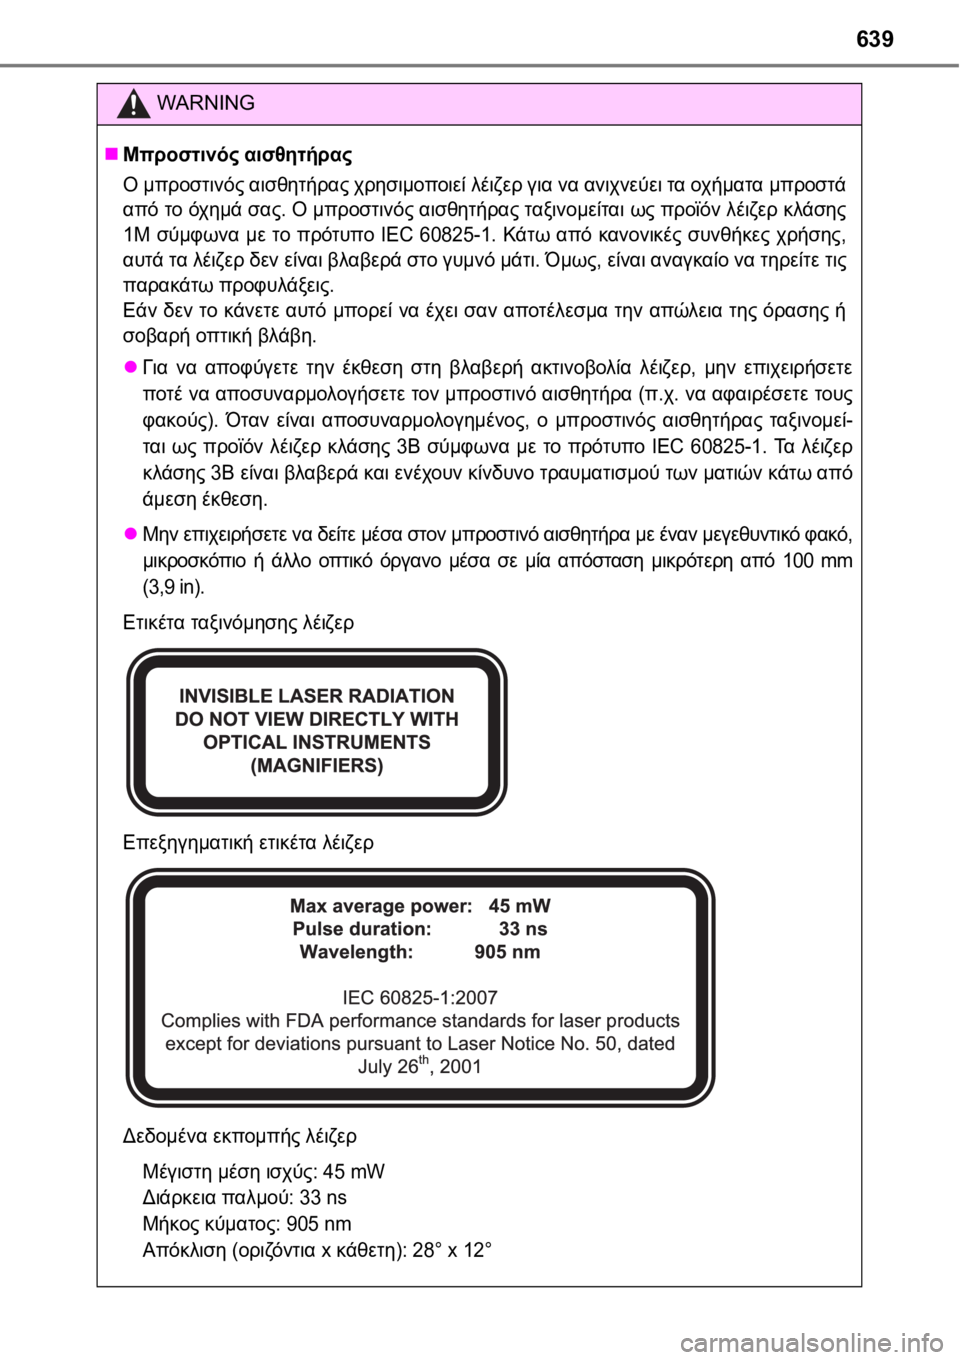 TOYOTA AURIS 2016  ΟΔΗΓΌΣ ΧΡΉΣΗΣ (in Greek) 639
WARNING
Μπροστινός αισθητήρας
Ο μπροστινός αισθητήρας χρησιμοποιεί λέιζερ για να ανιχνεύει τα οχήματα μπρο�